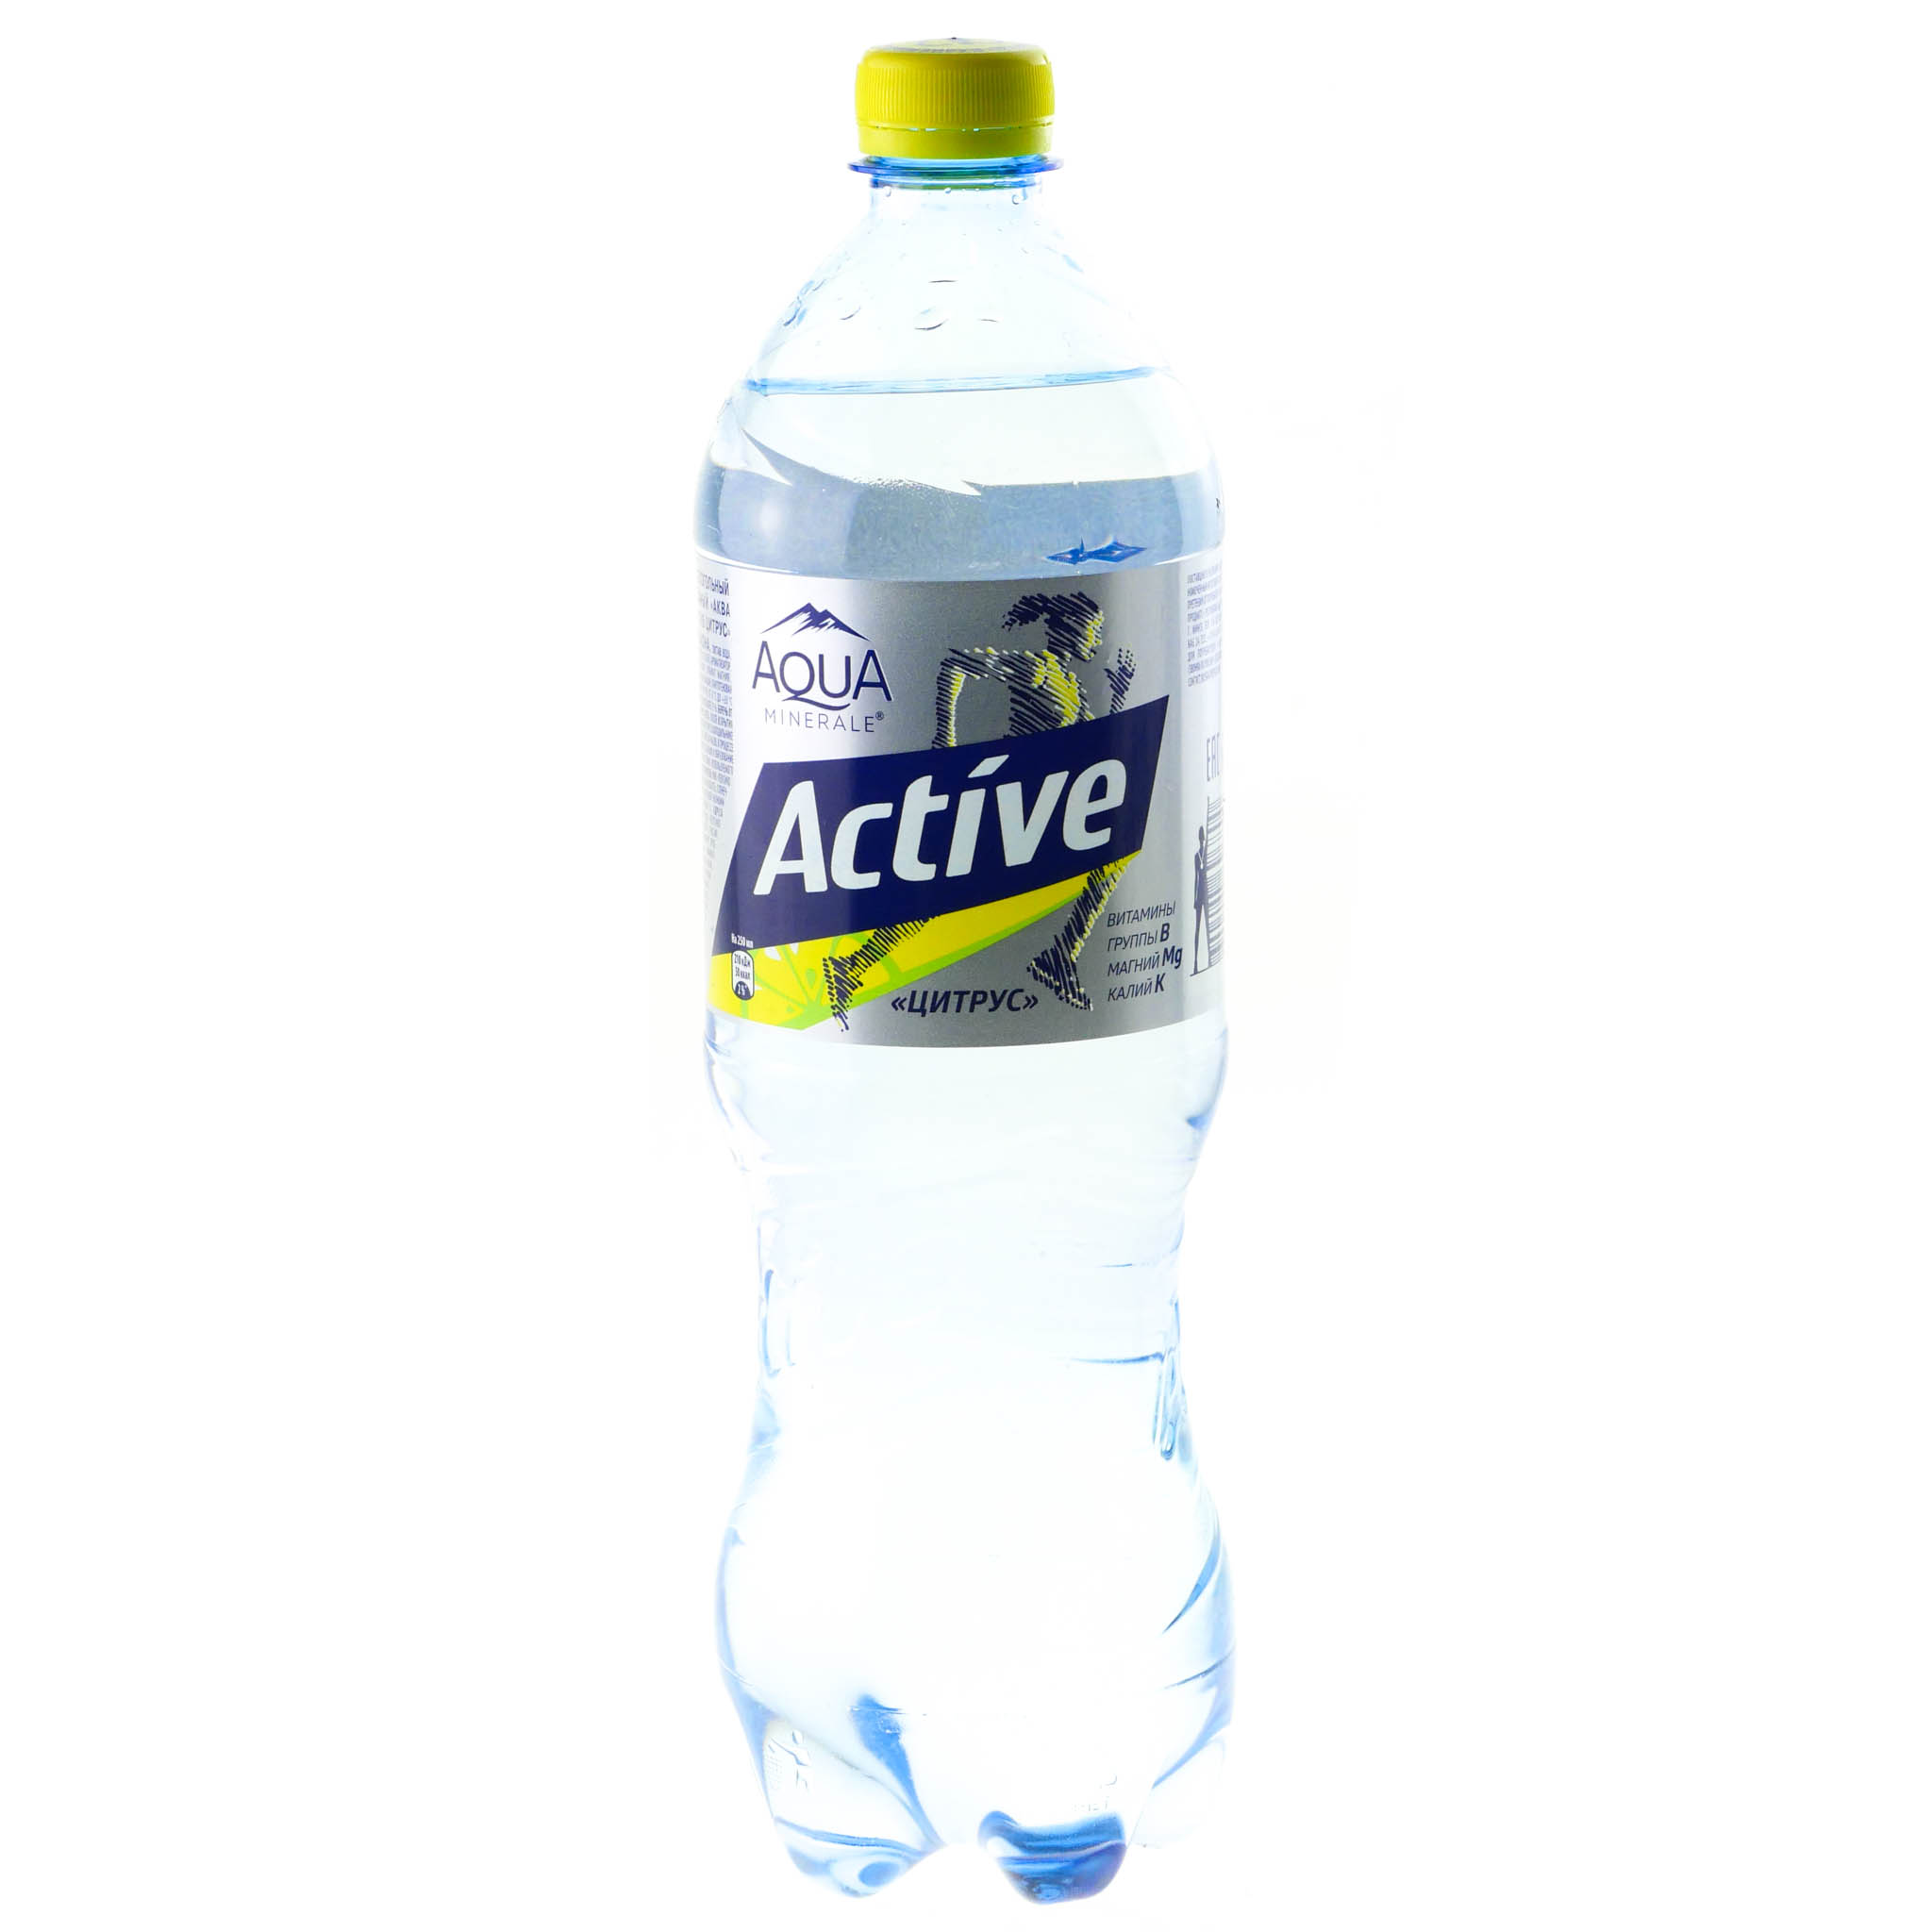 Аква напиток. Актив Аква Минерале 1л. Aqua minerale Active лимон. Аква Минерале цитрус 1 литр. Аква Минерале Актив цитрус 1л.